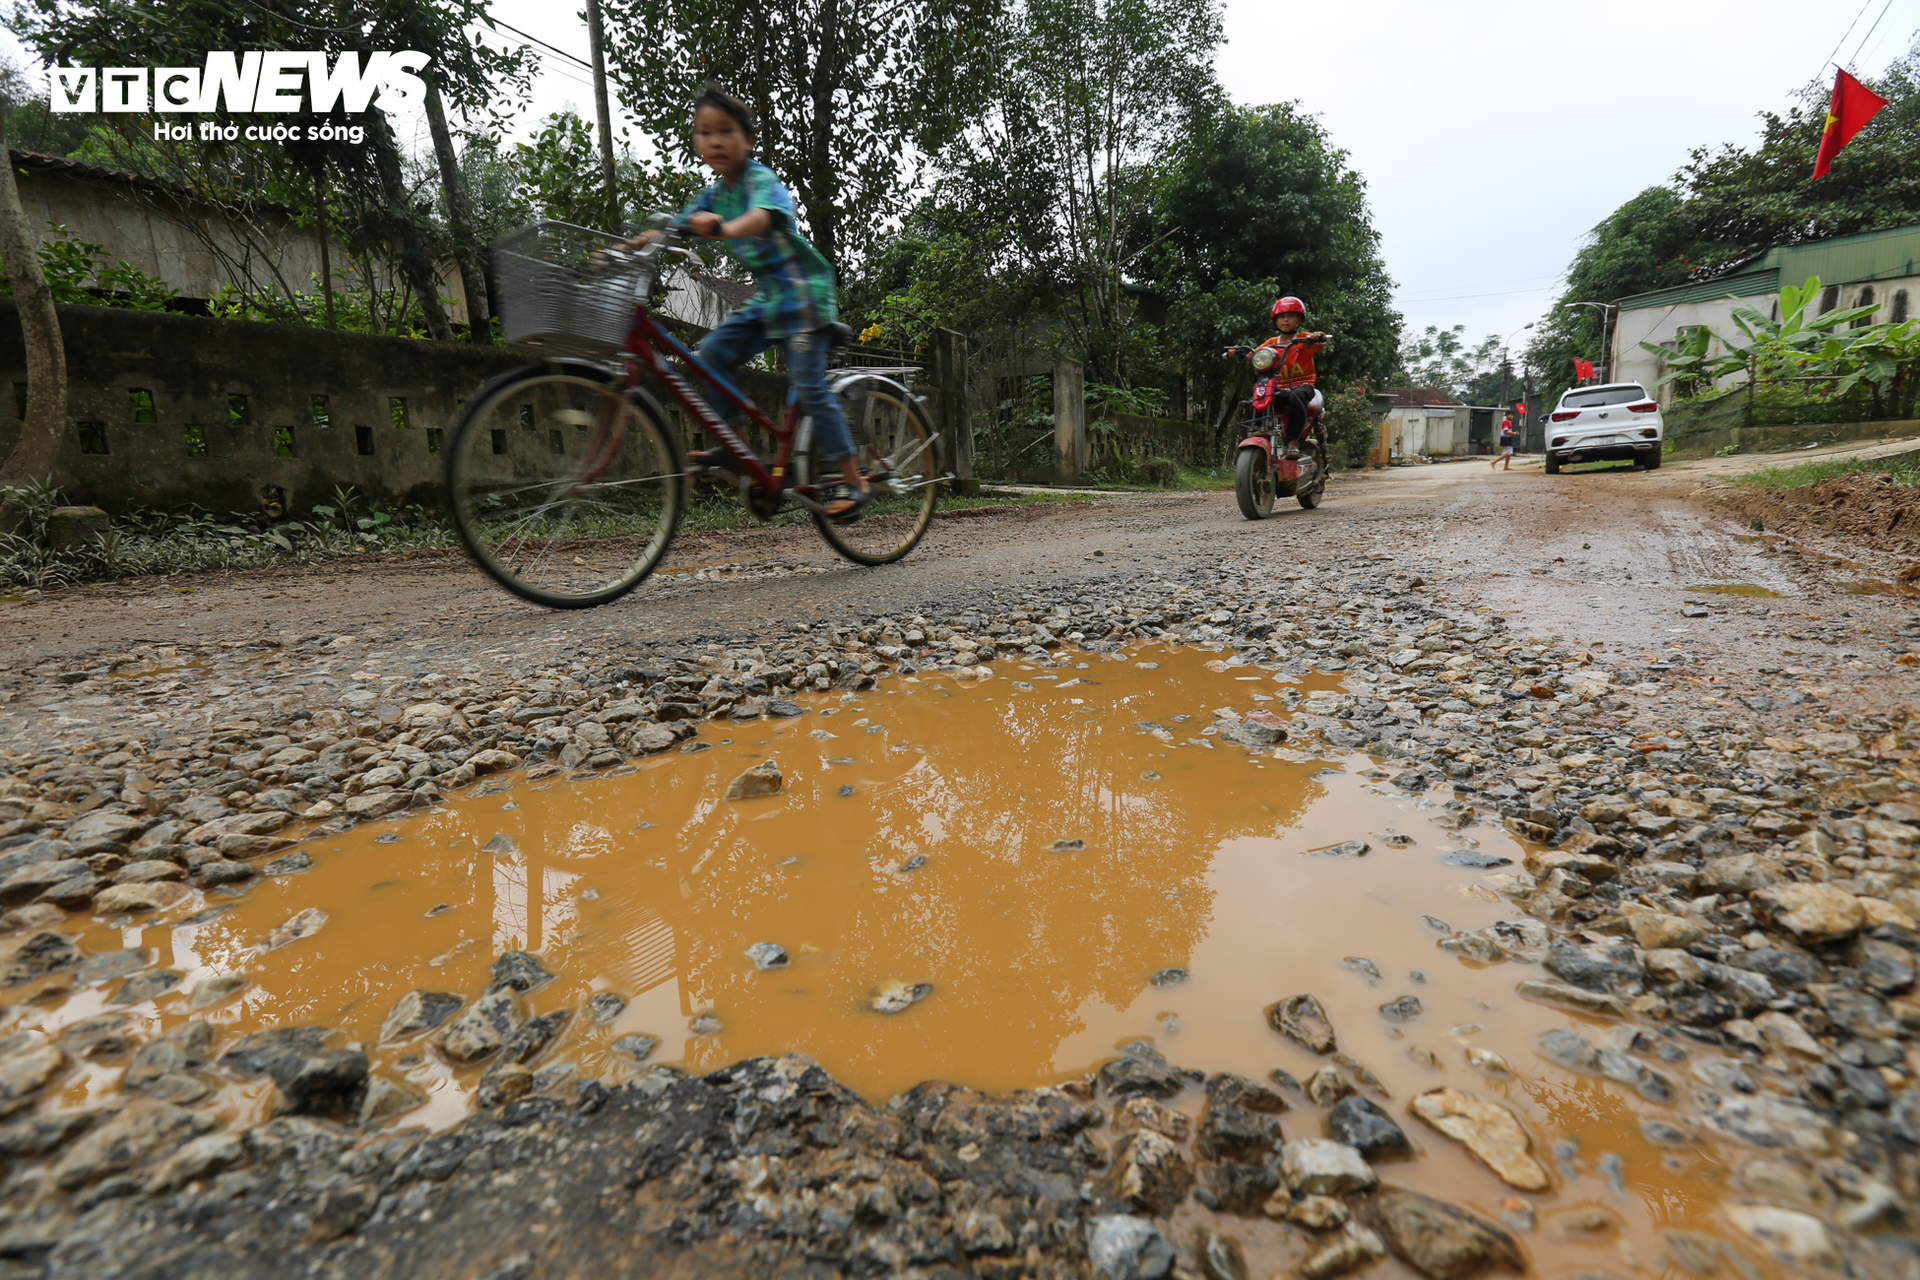 Dân khổ sở đi lại trên tuyến đường độc đạo vào xã miền núi ở Hà Tĩnh